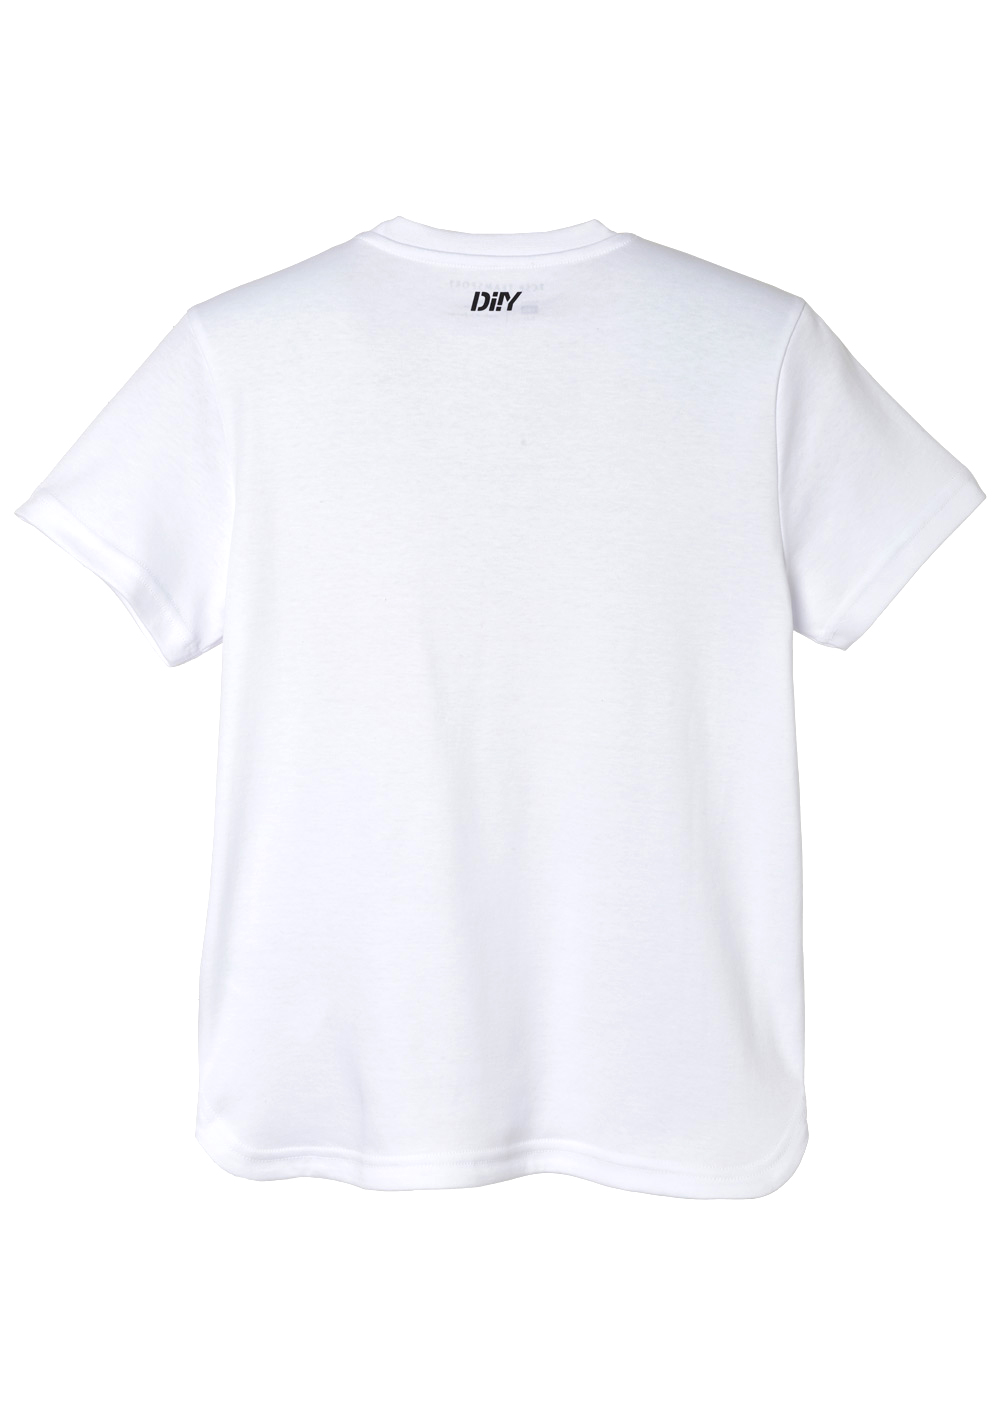 DIIY - Kinder T-Shirt 2021-22